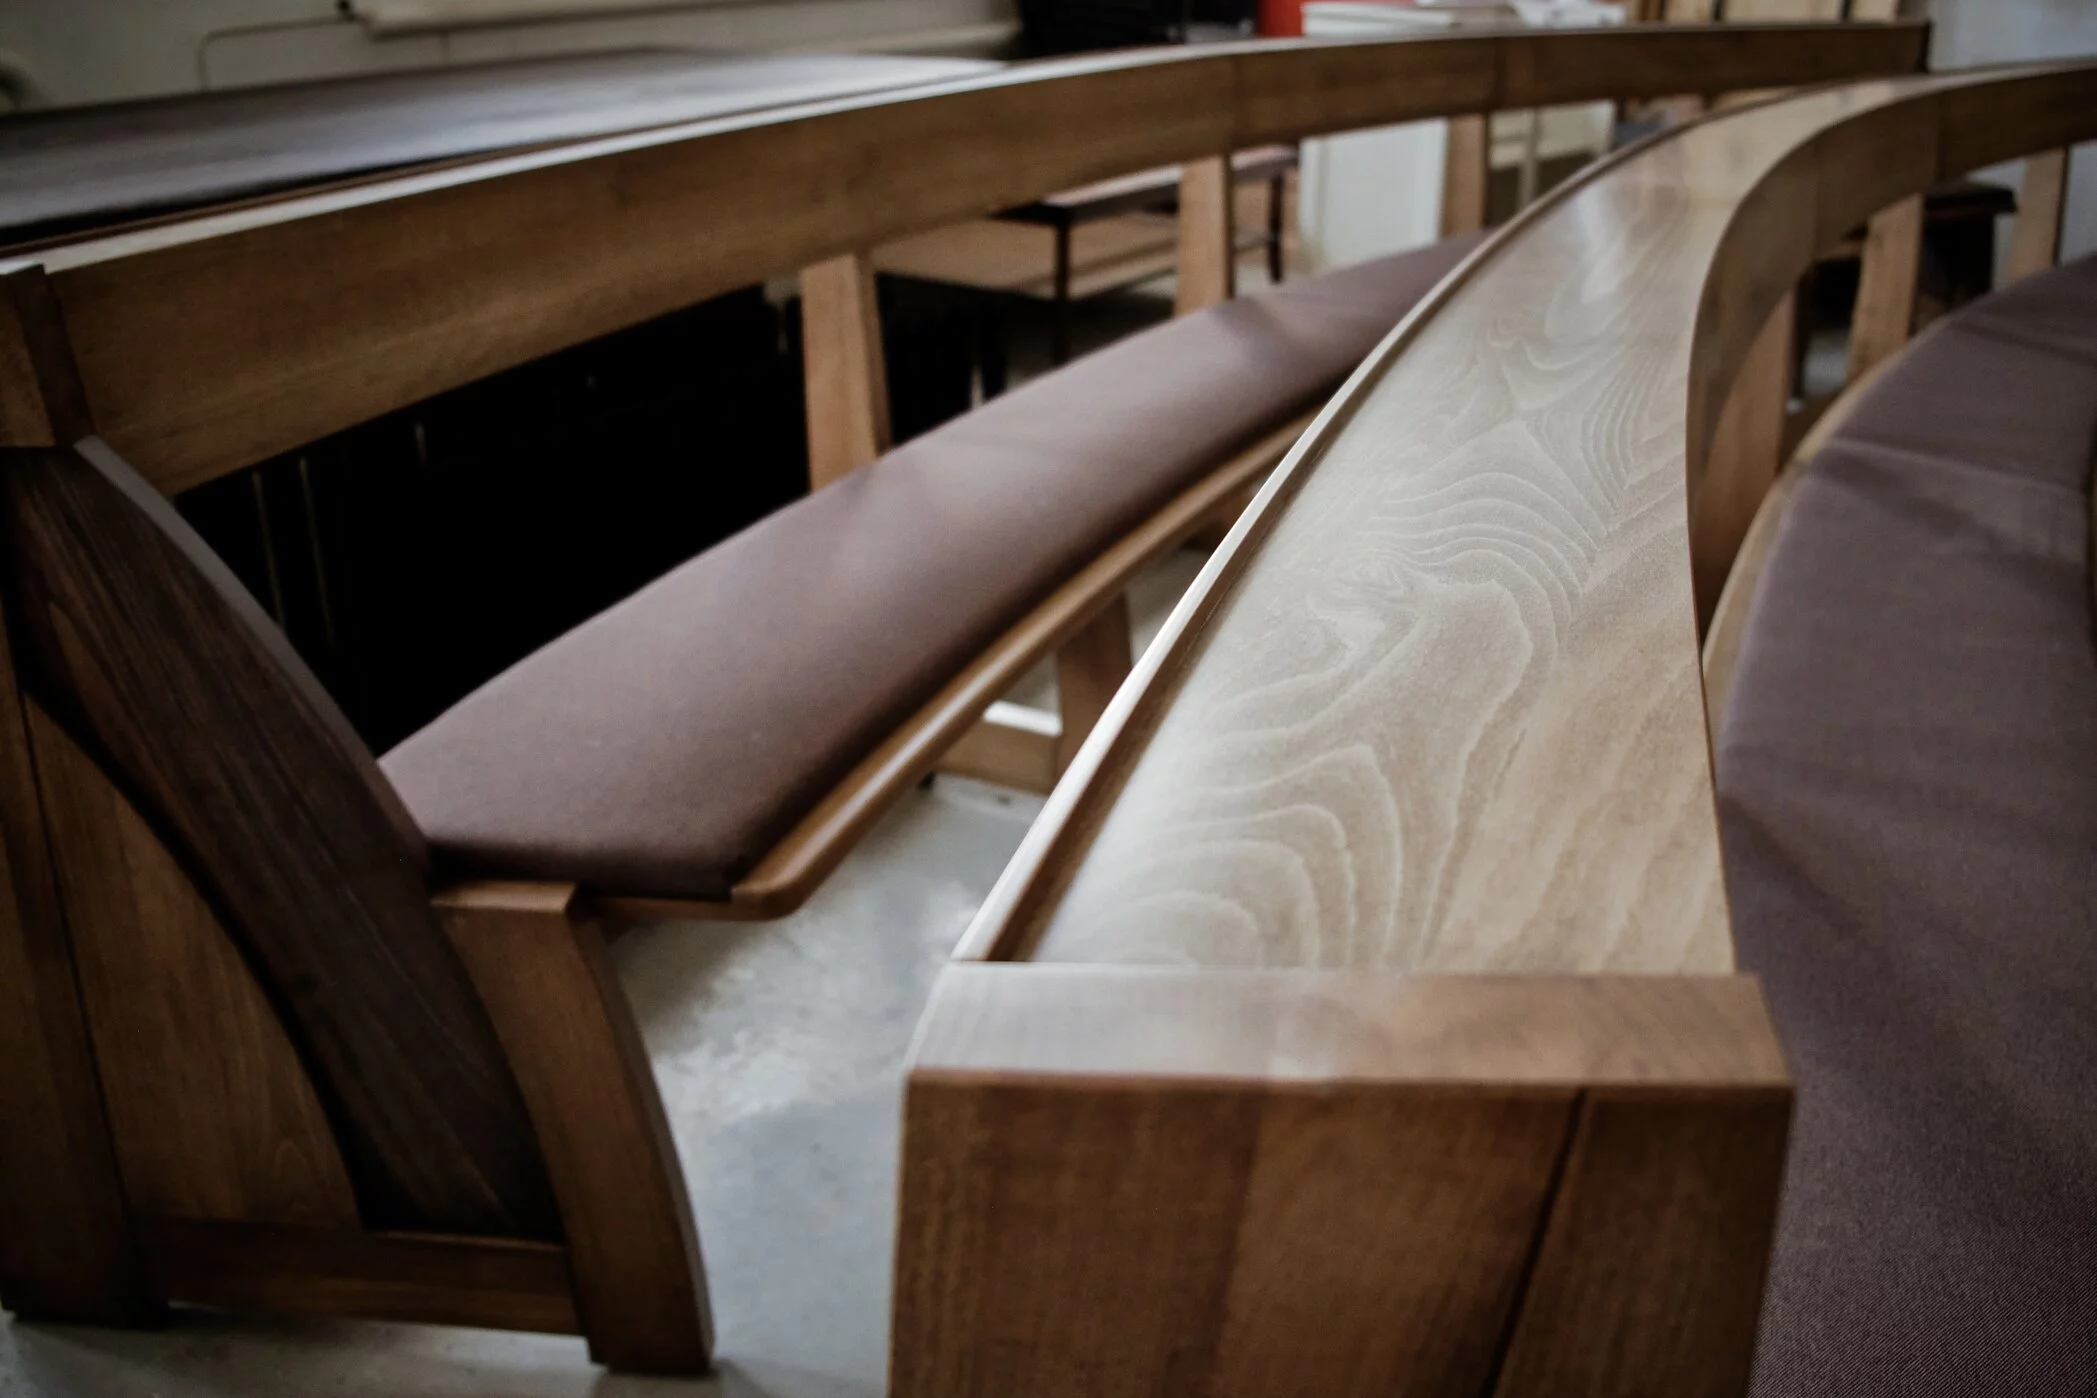 El diseño de banco de iglesia minimalista de Zoe combina funcionalidad y calidad. Vista del banco terminado con un cojín de asiento